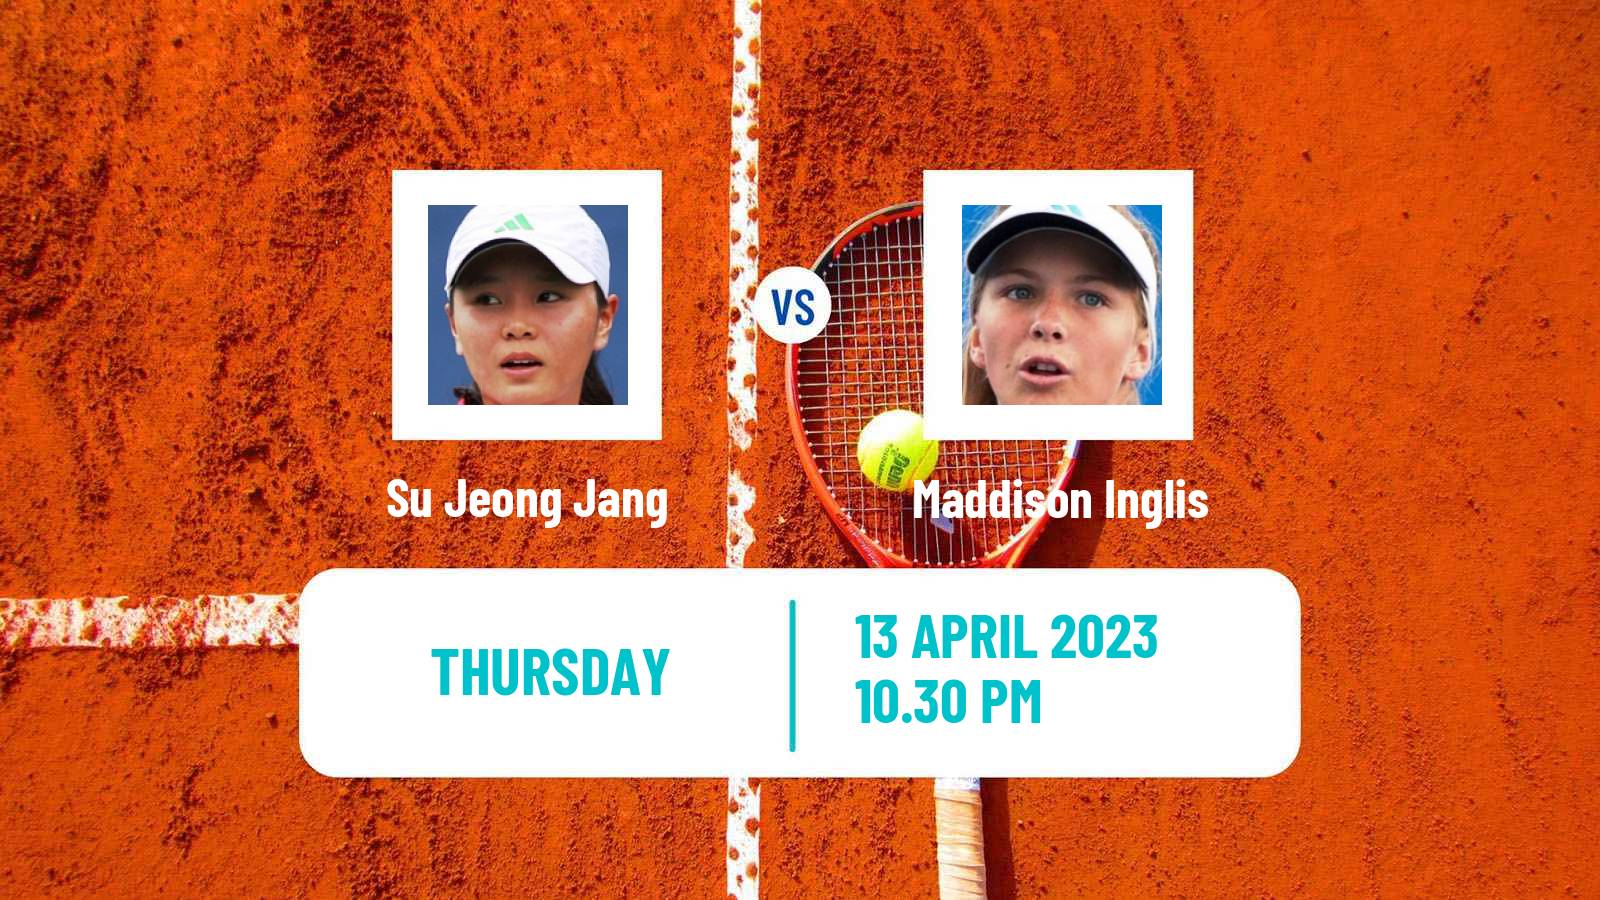 Tennis ITF Tournaments Su Jeong Jang - Maddison Inglis